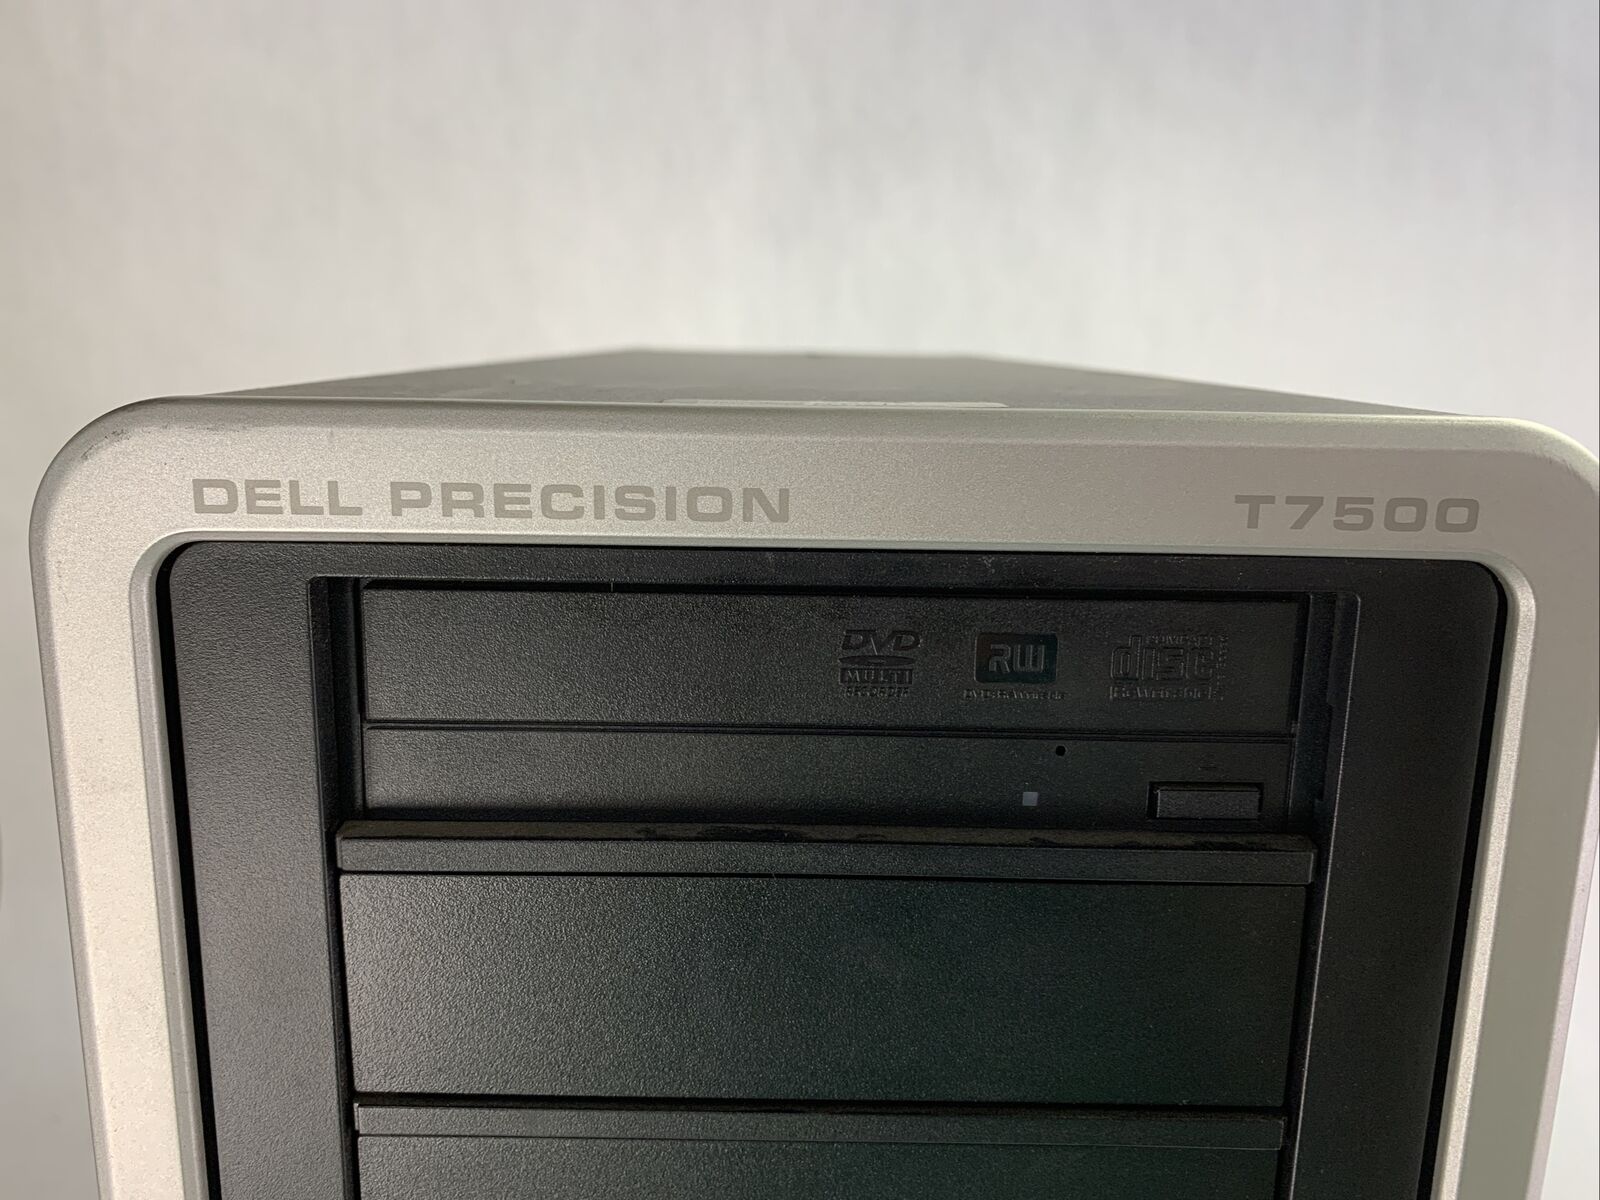 Dell Precision T7500 MT Intel Xeon E620 2.4GHz 8GB RAM No HDD No OS w/ Q FX1800